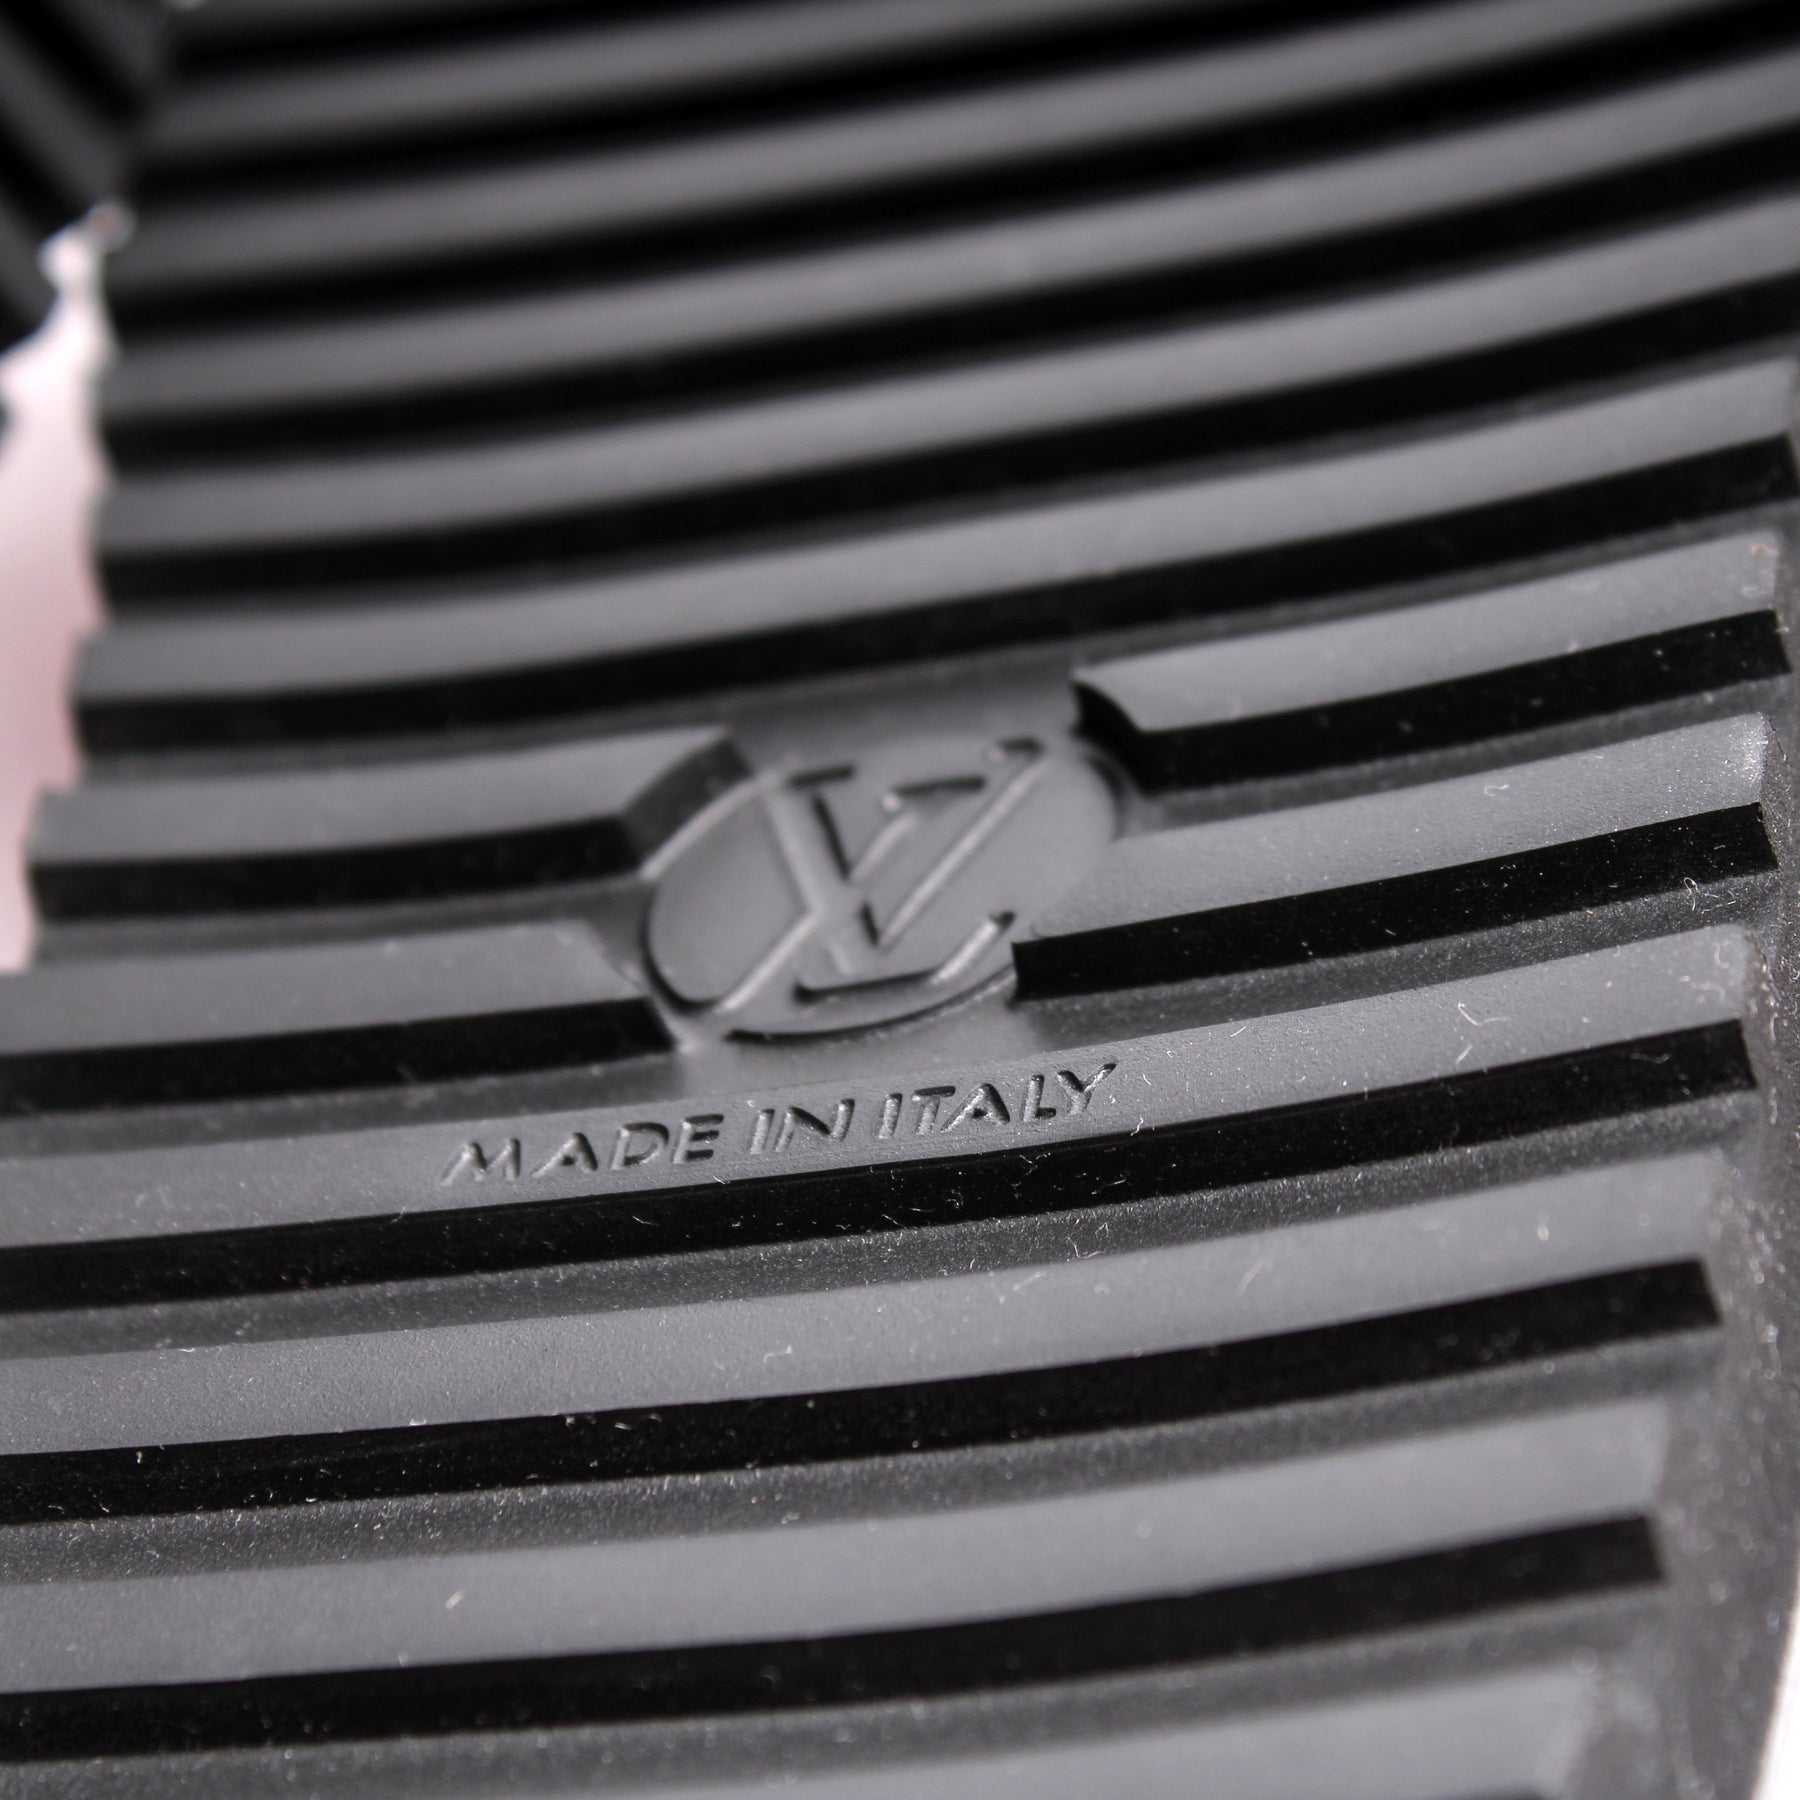 Louis Vuitton Paseo Flat Comfort Sandal, Pink, 37.5